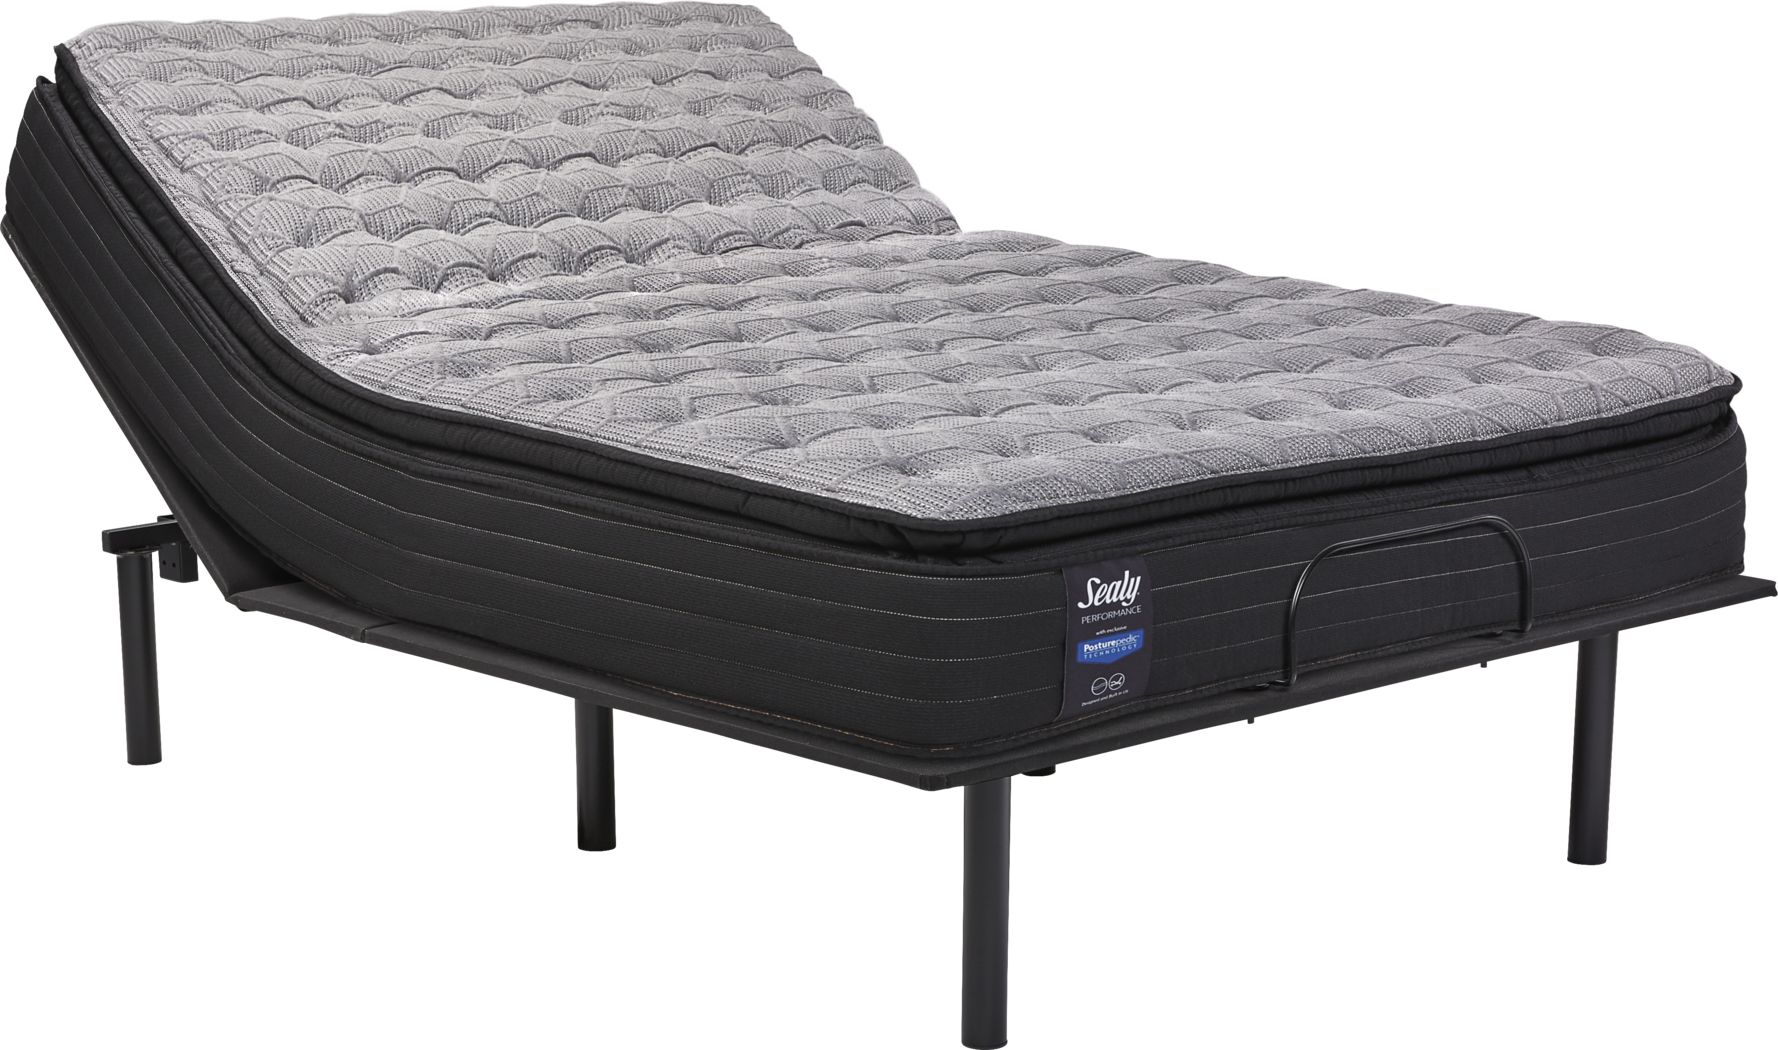 sealy queen size air mattress